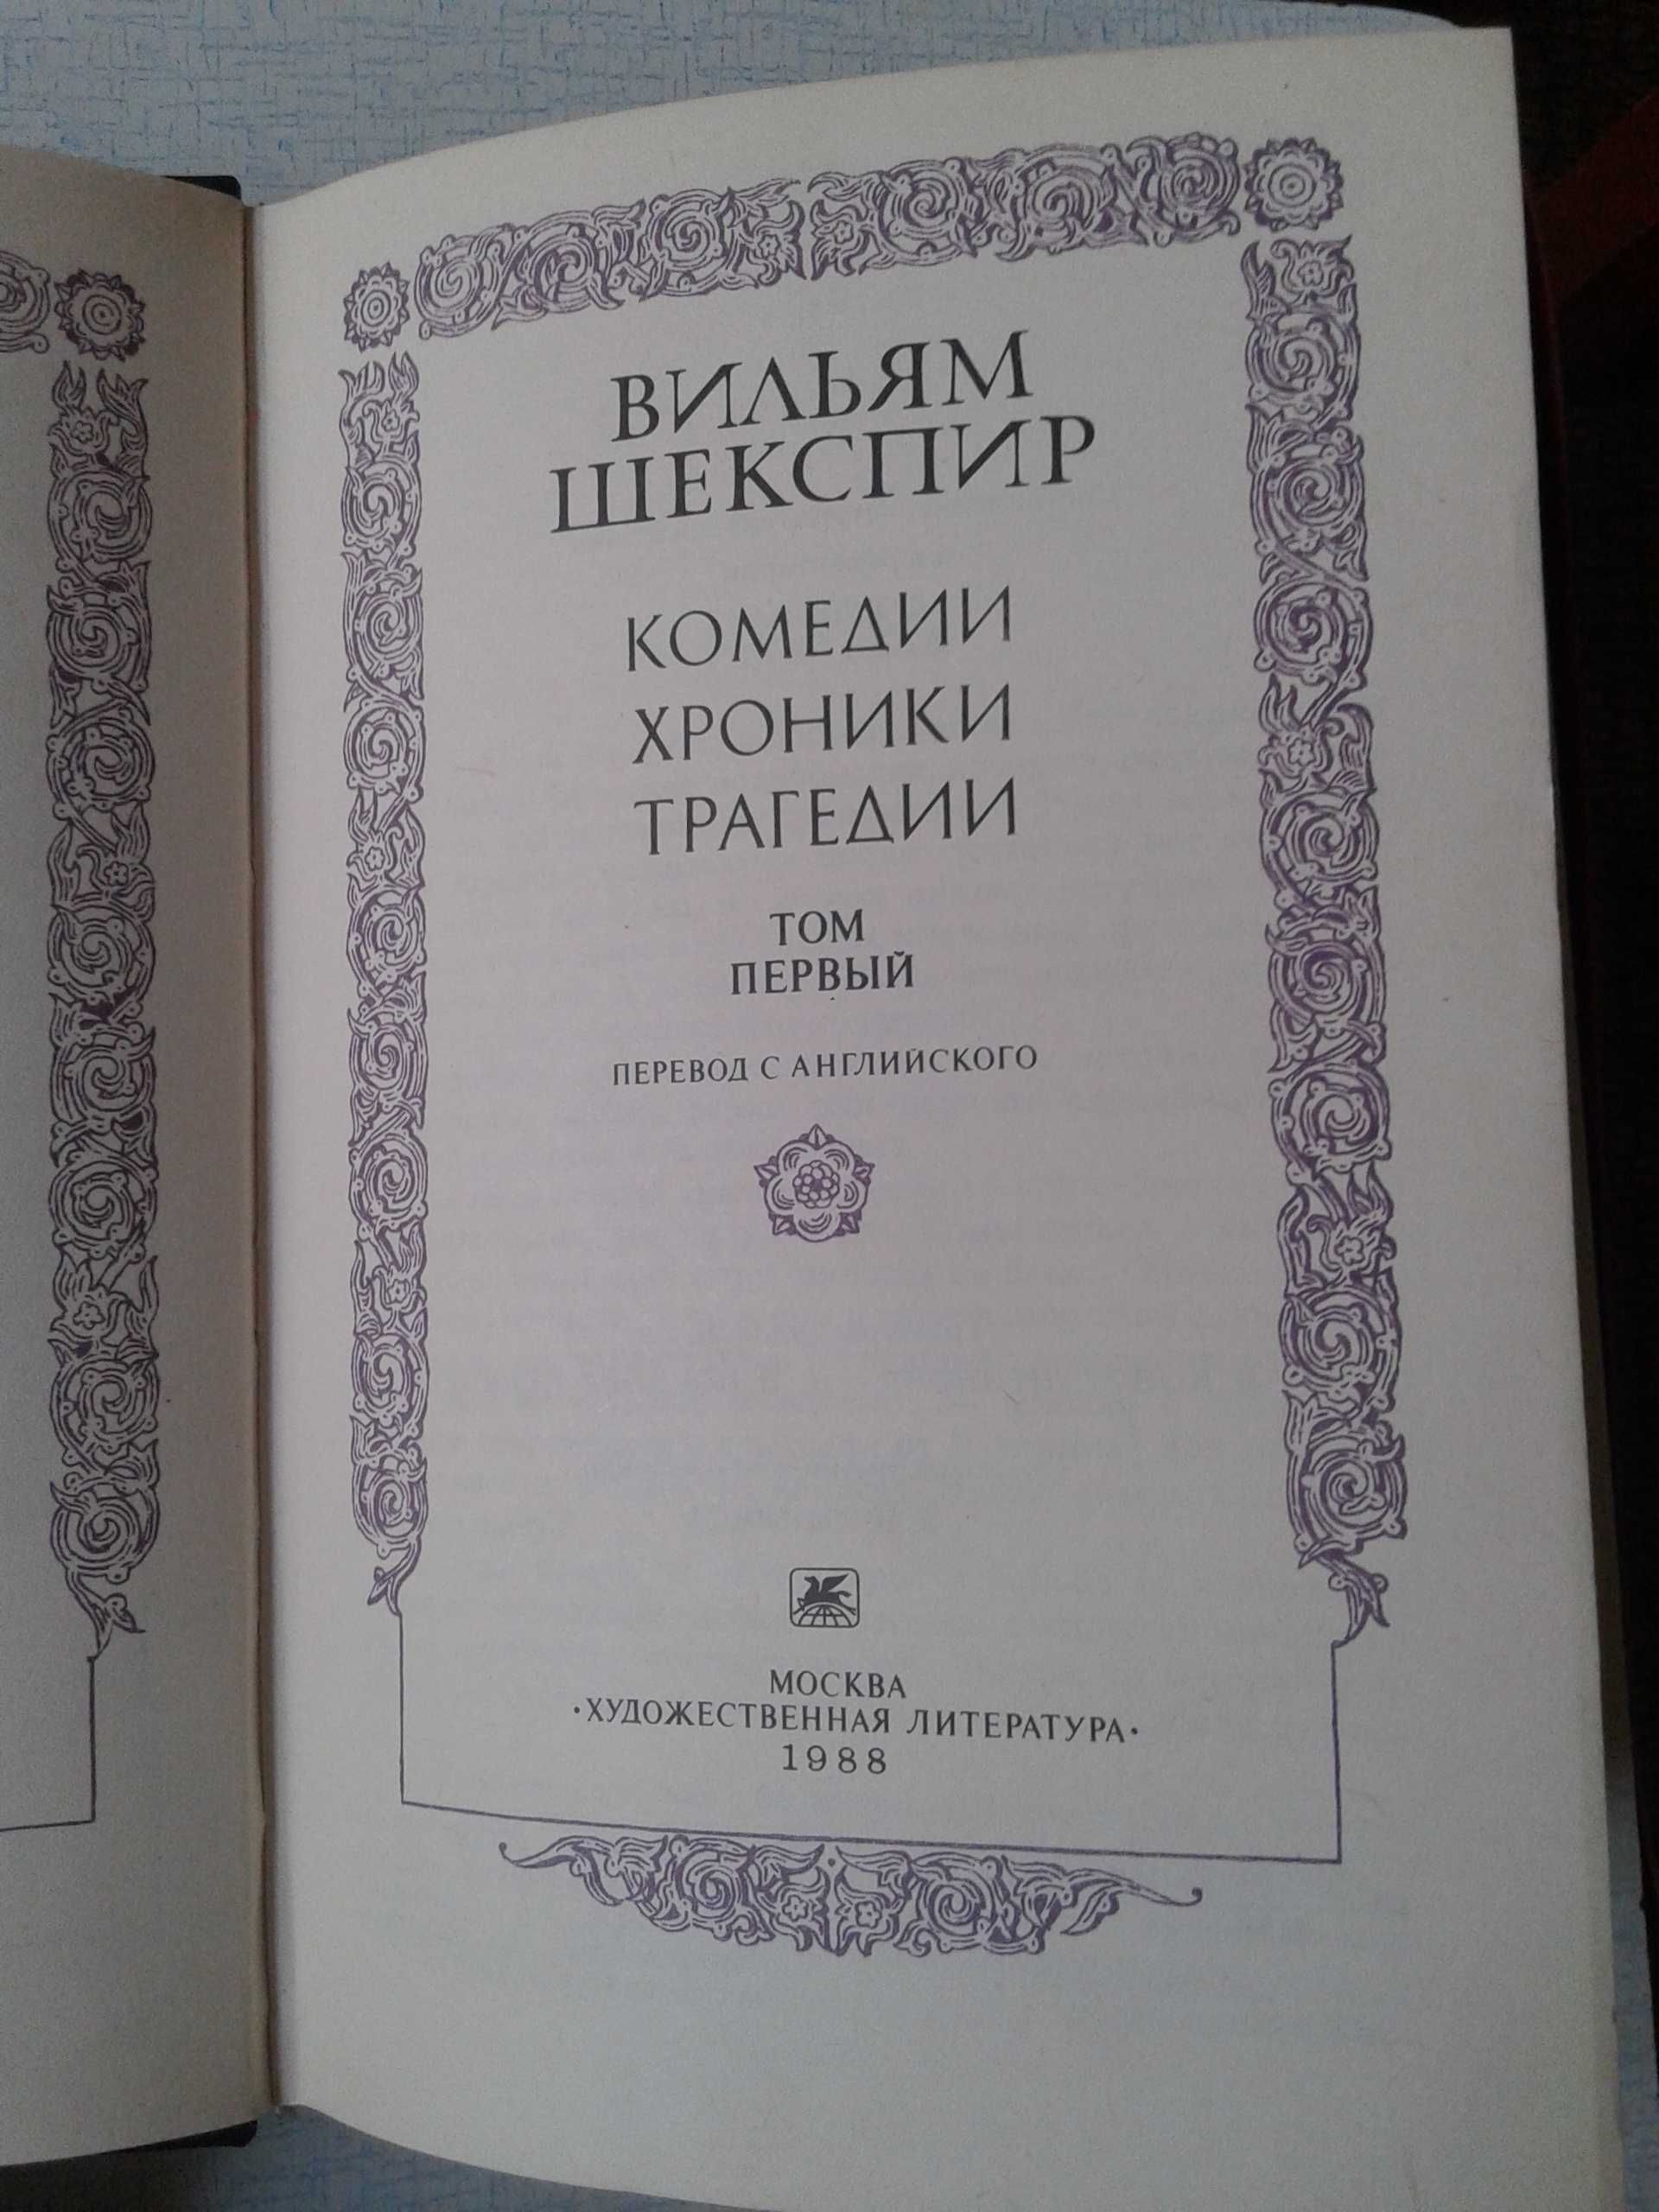 Вильям  ШЕКСПИР  "Комедии,хроники,трагедии"  в 2-х томах